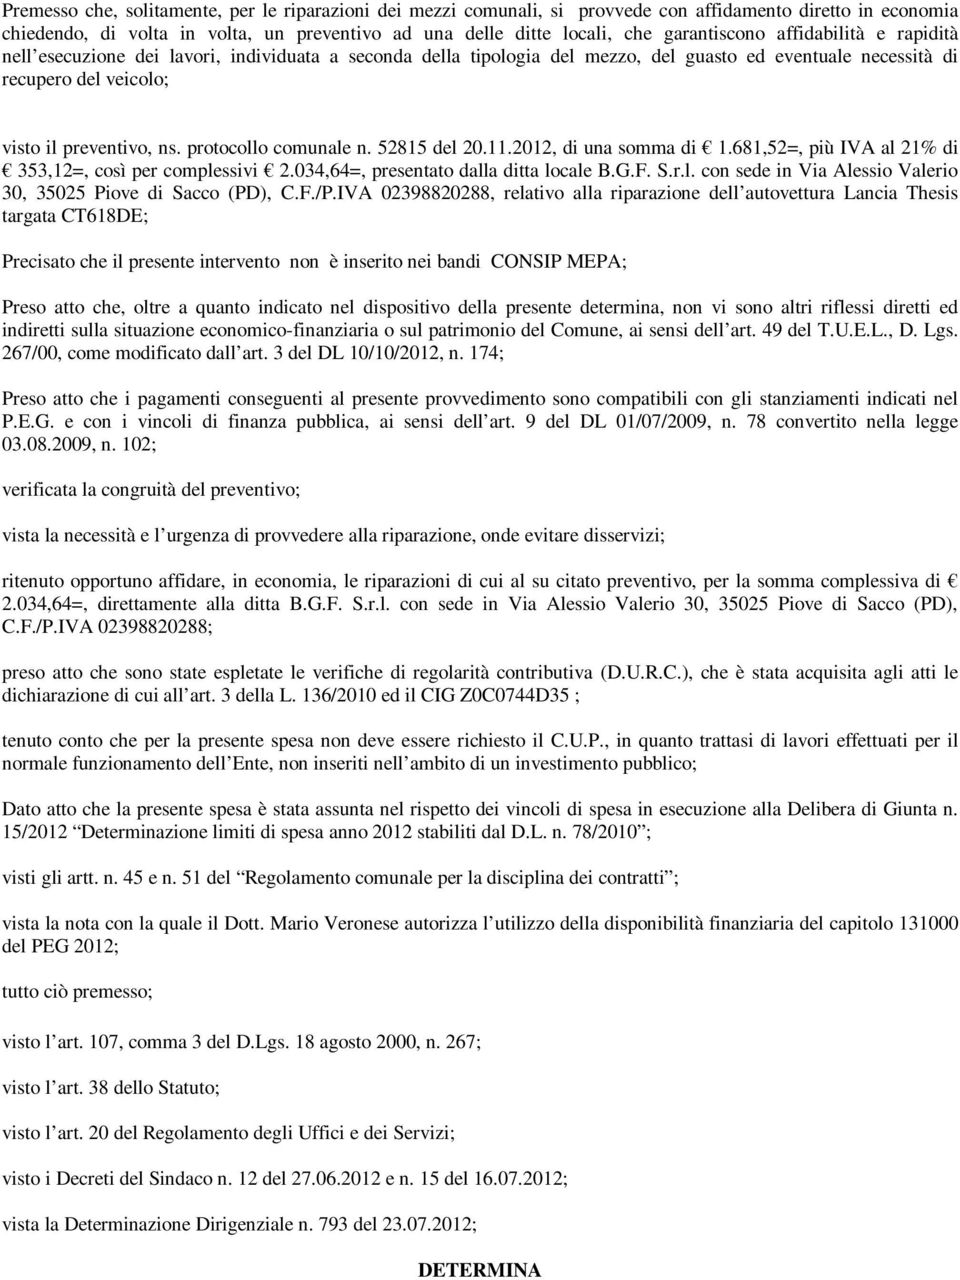 protocollo comunale n. 52815 del 20.11.2012, di una somma di 1.681,52=, più IVA al 21% di 353,12=, così per complessivi 2.034,64=, presentato dalla ditta locale B.G.F. S.r.l. con sede in Via Alessio Valerio 30, 35025 Piove di Sacco (PD), C.